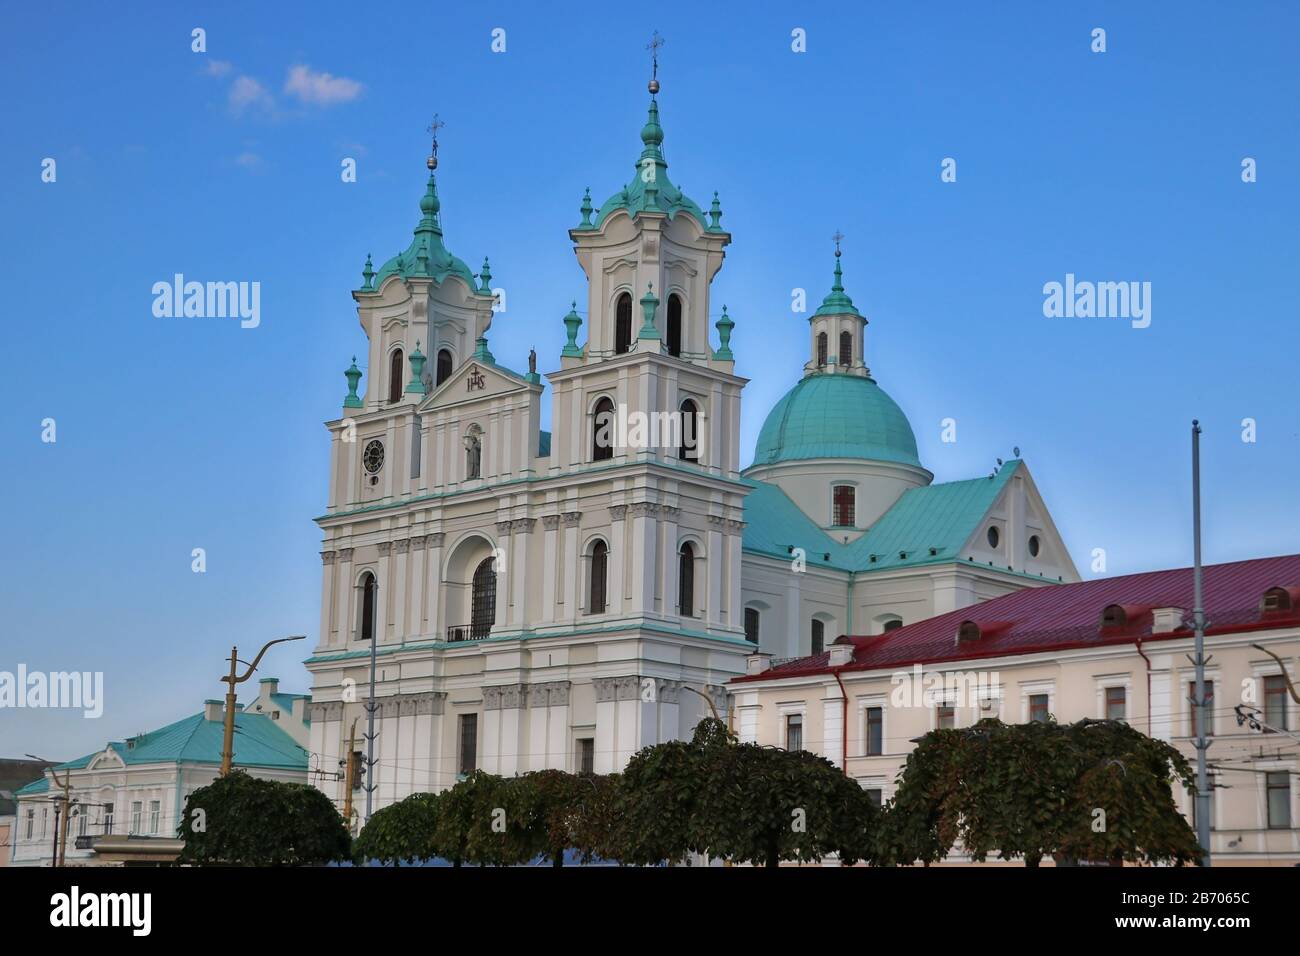 Grodno, Bielorussia - 15 maggio 2019: Famoso punto di riferimento è la Cattedrale di San Francesco Saverio a Grodno. La destinazione migliore per le vacanze estive in Europa orientale Foto Stock